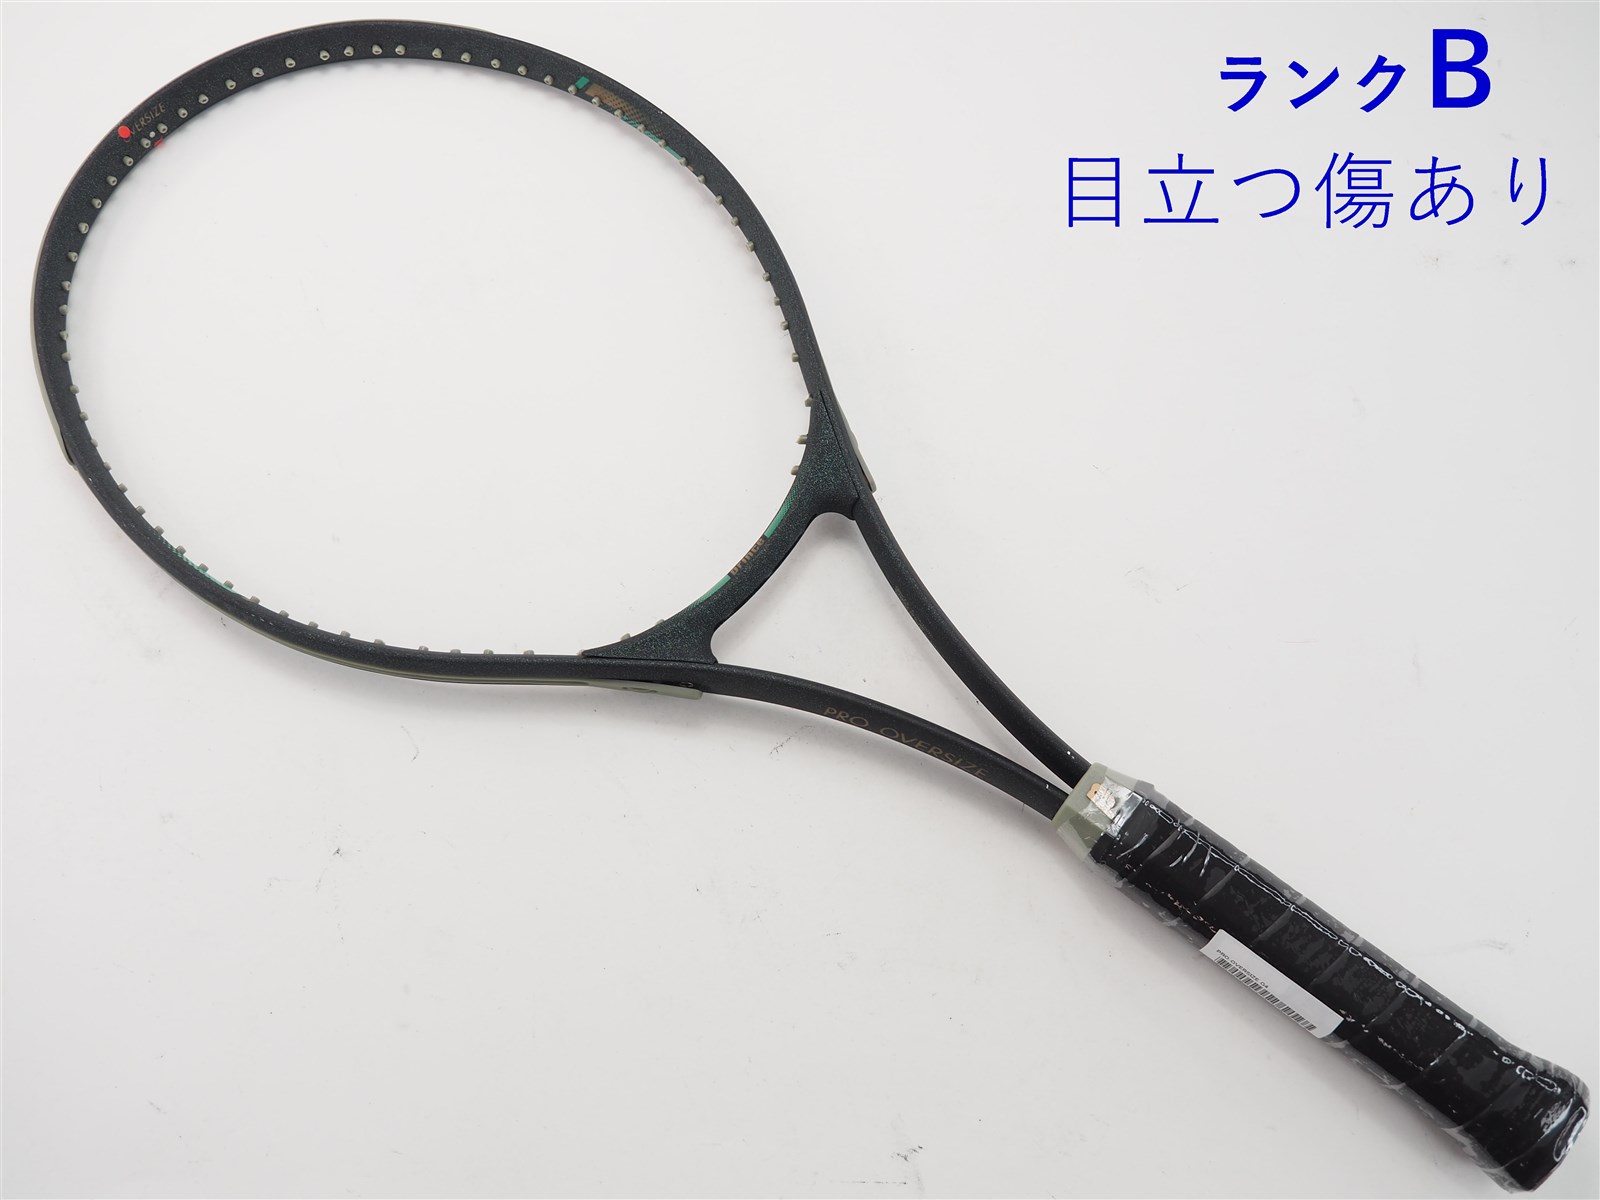 元グリップ交換済み付属品テニスラケット プリンス ボルテックス OS (G3)PRINCE VORTEX OS